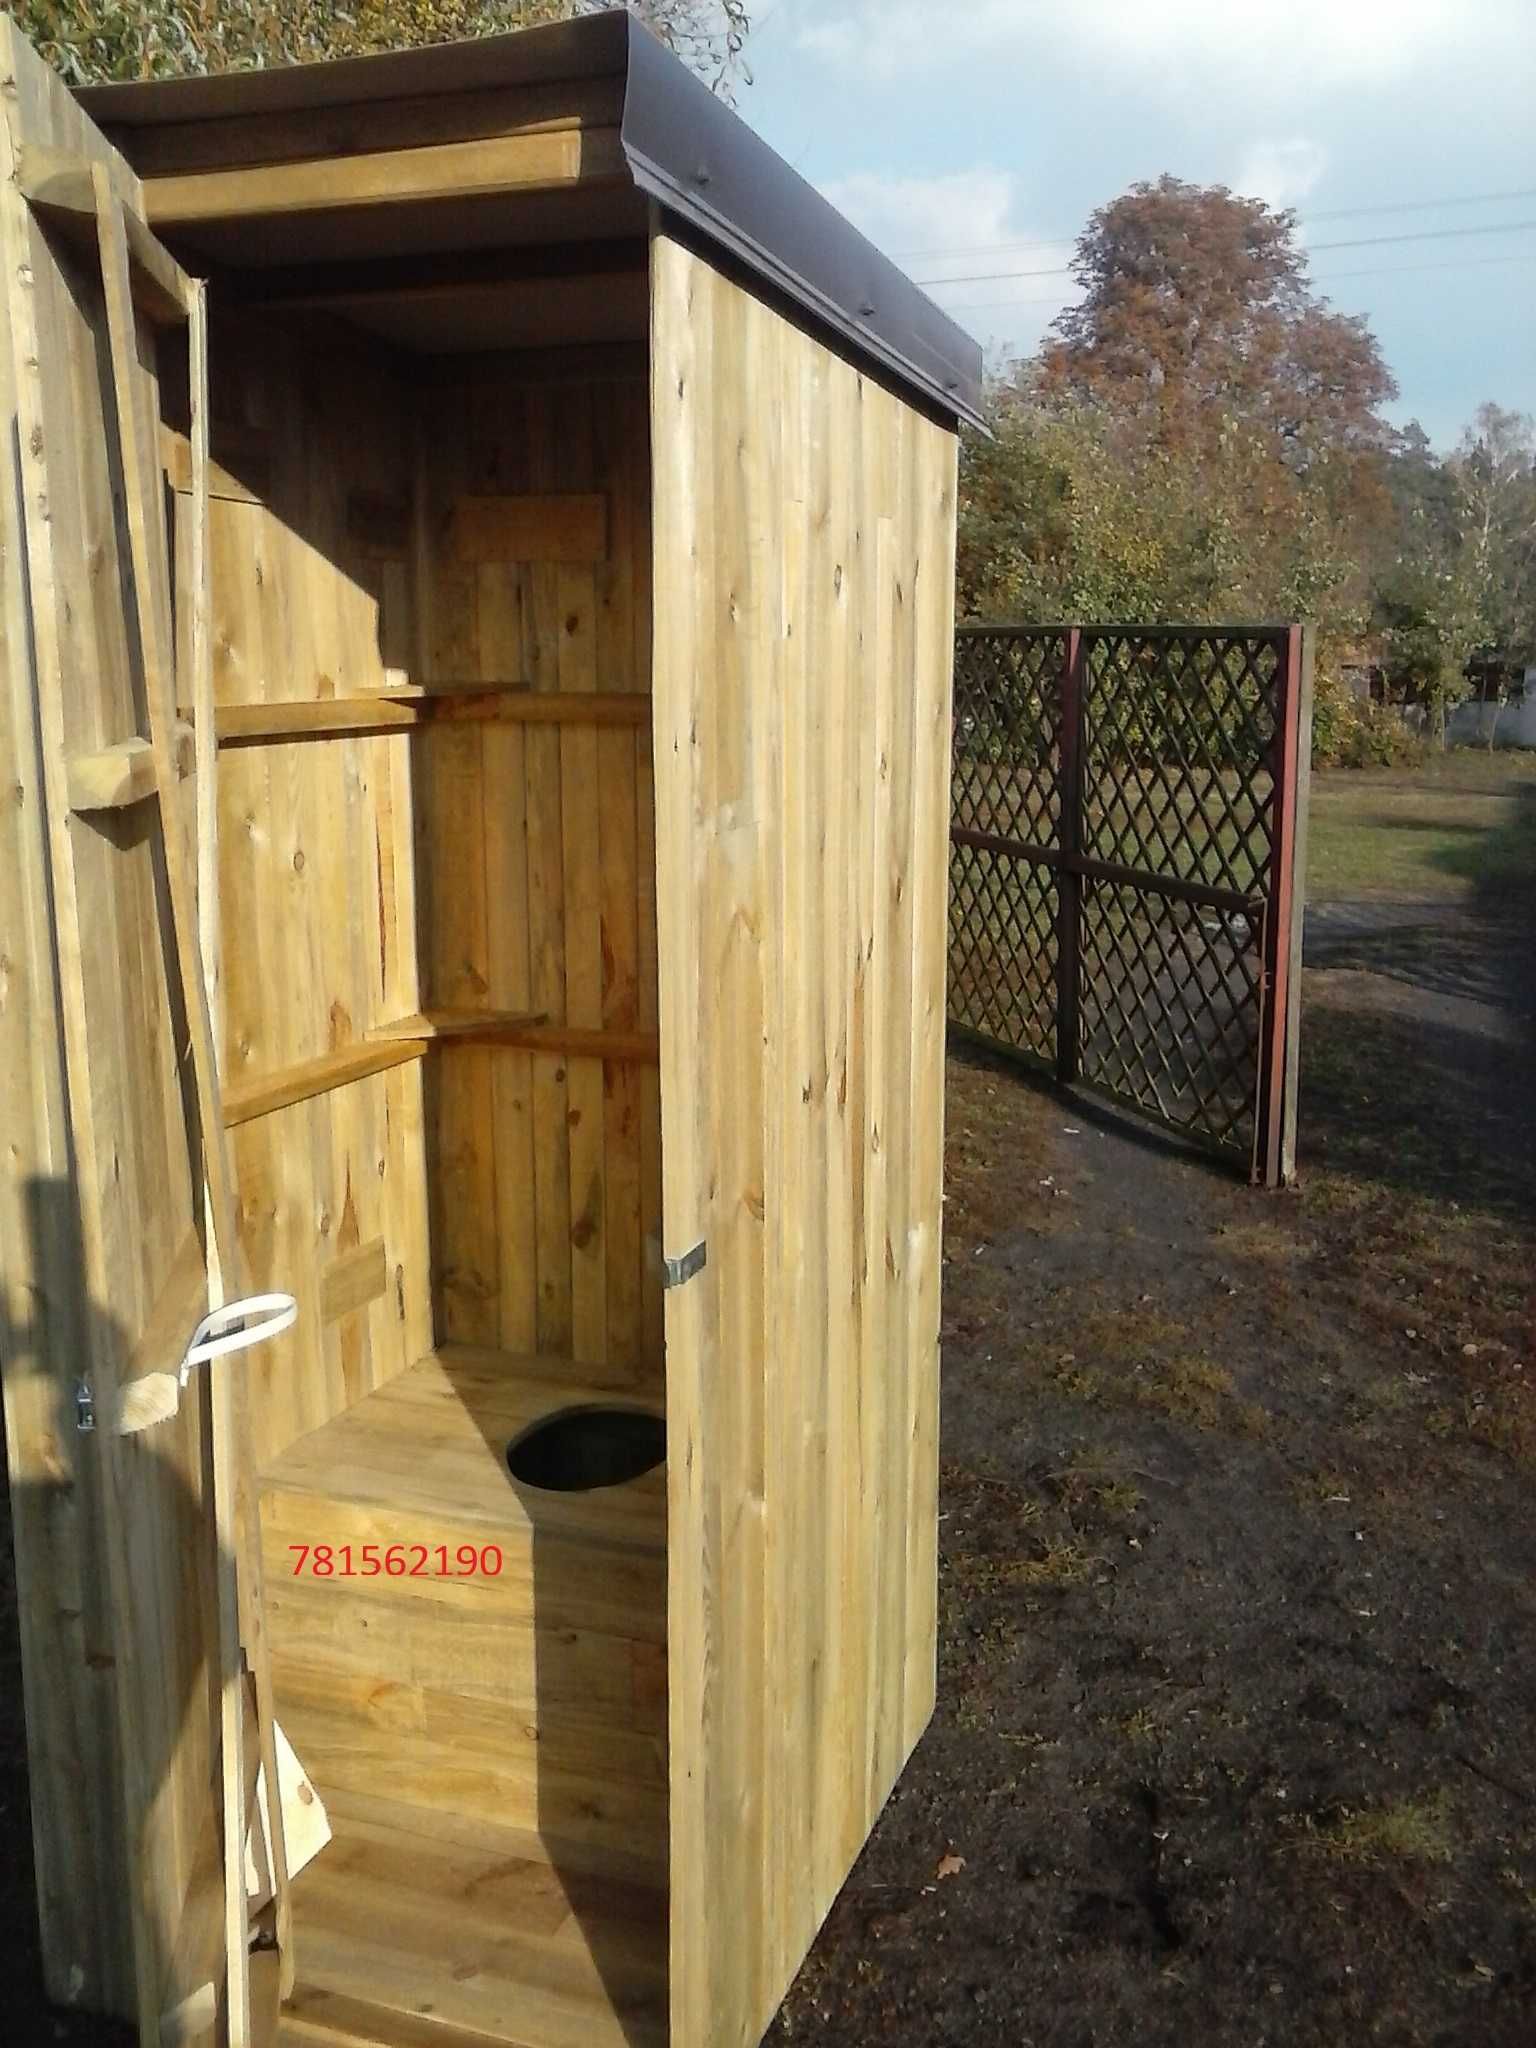 Wychodek toaleta drewniana ubikacja wc kibelek na budowę lub działkę